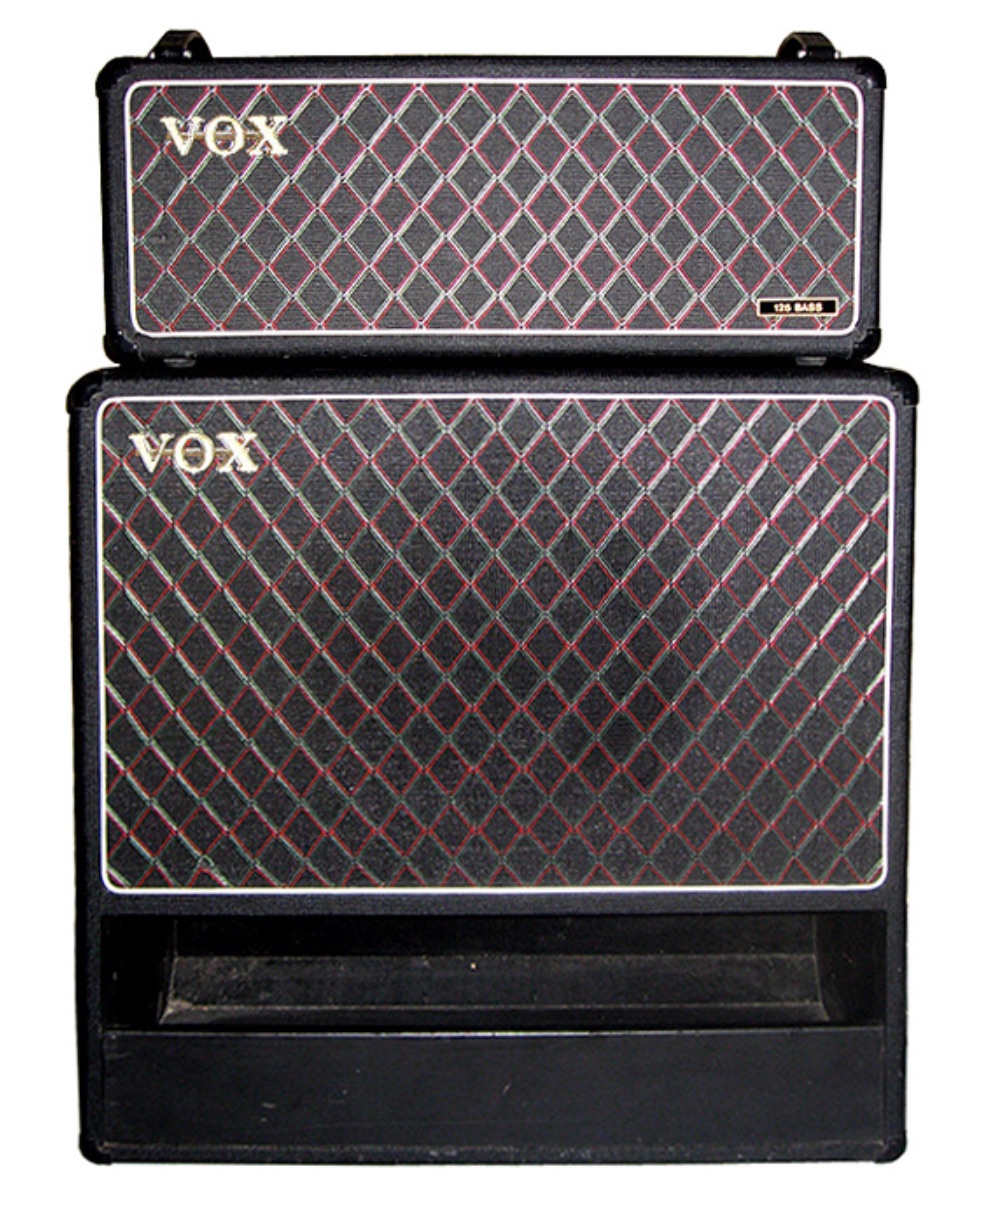 VOX V125 Bass.jpg